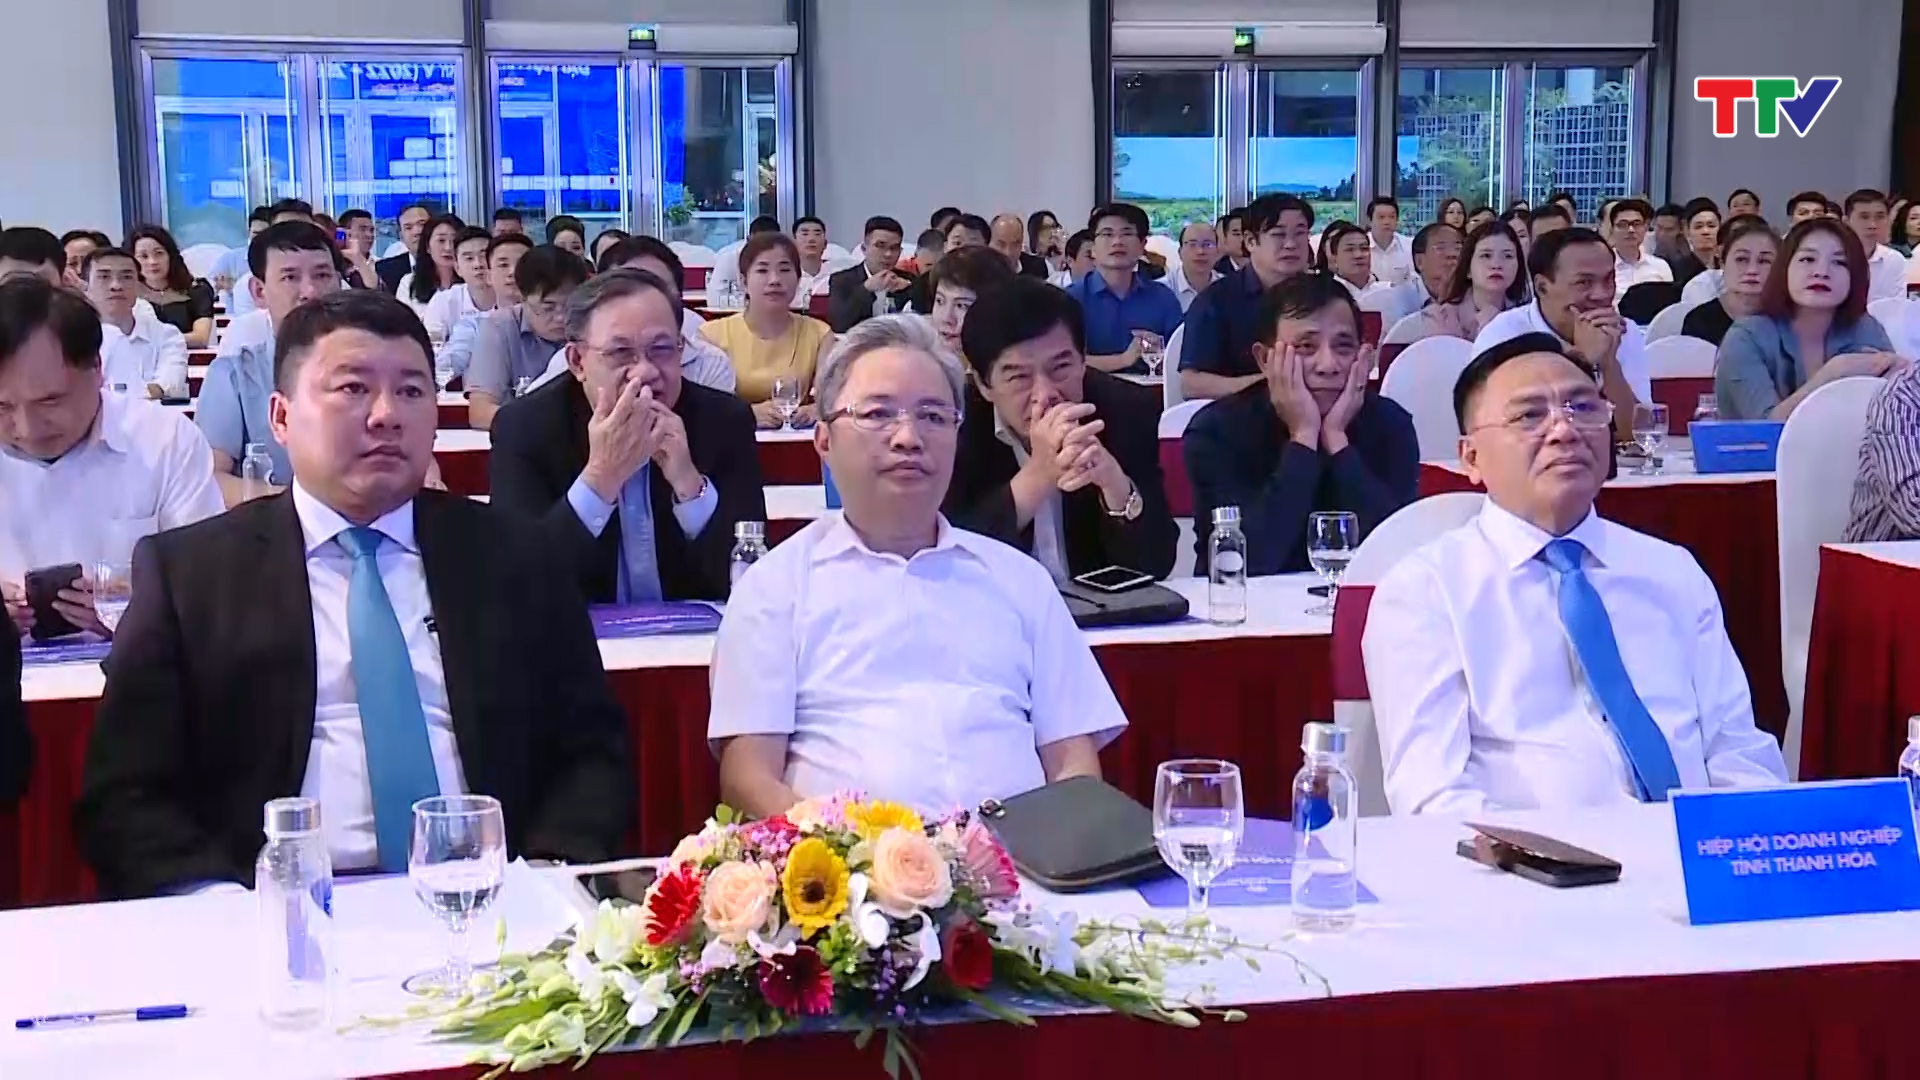 Đại hội Hội doanh nhân Thanh Hóa tại Hà Nội - Ảnh 2.